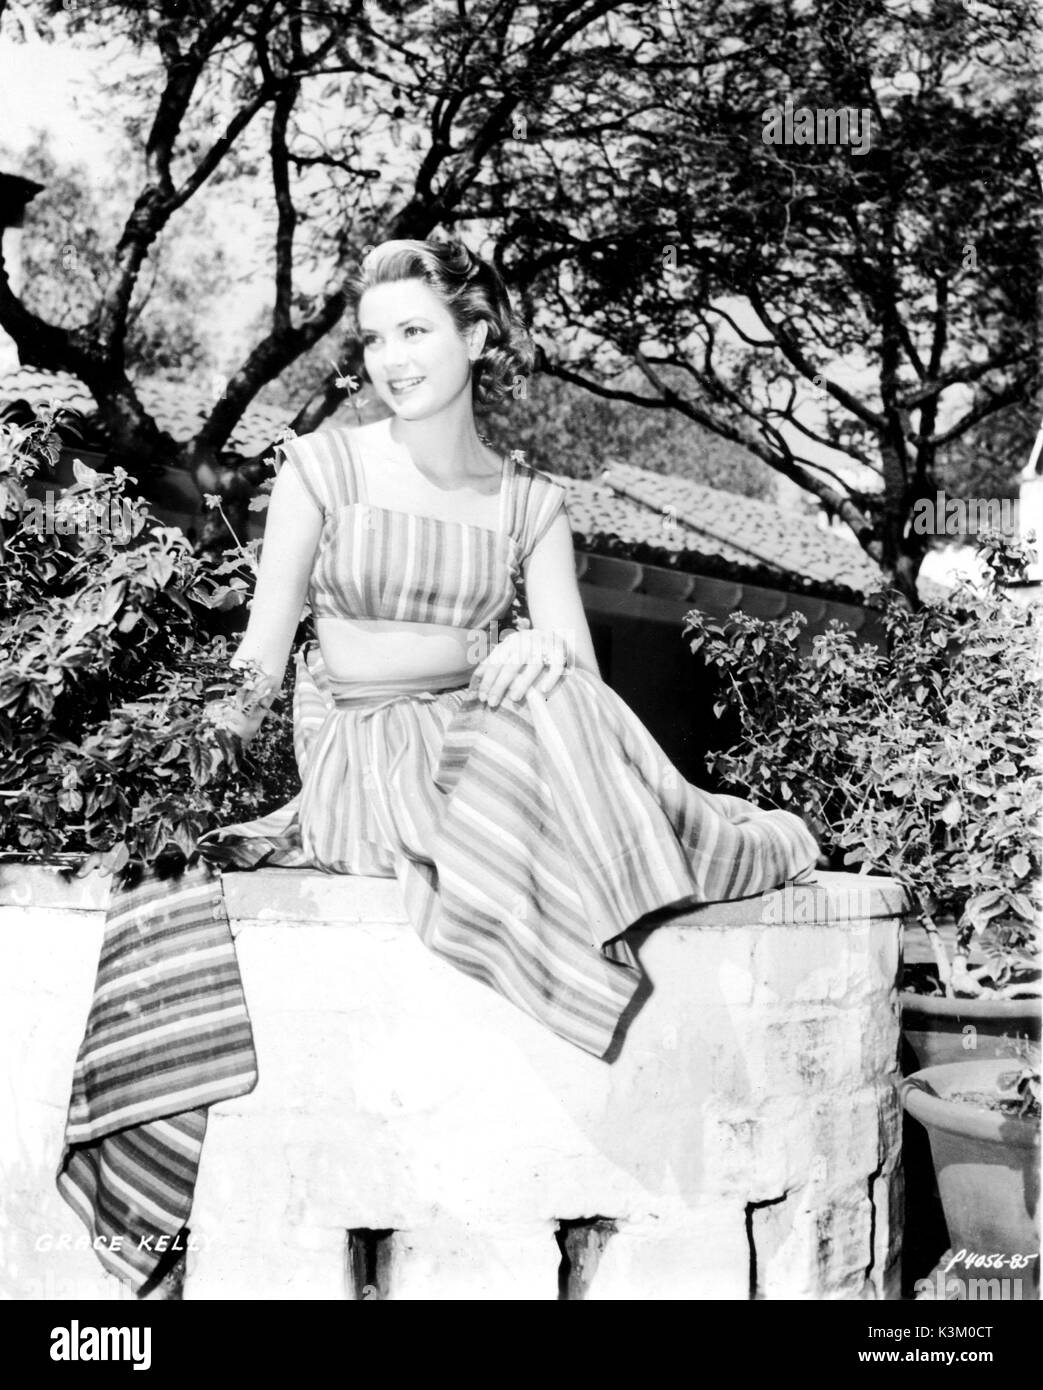 L'actrice américaine GRACE KELLY, qui a épousé le Prince Rainier de Monaco et est devenue la princesse Grace de Monaco Banque D'Images